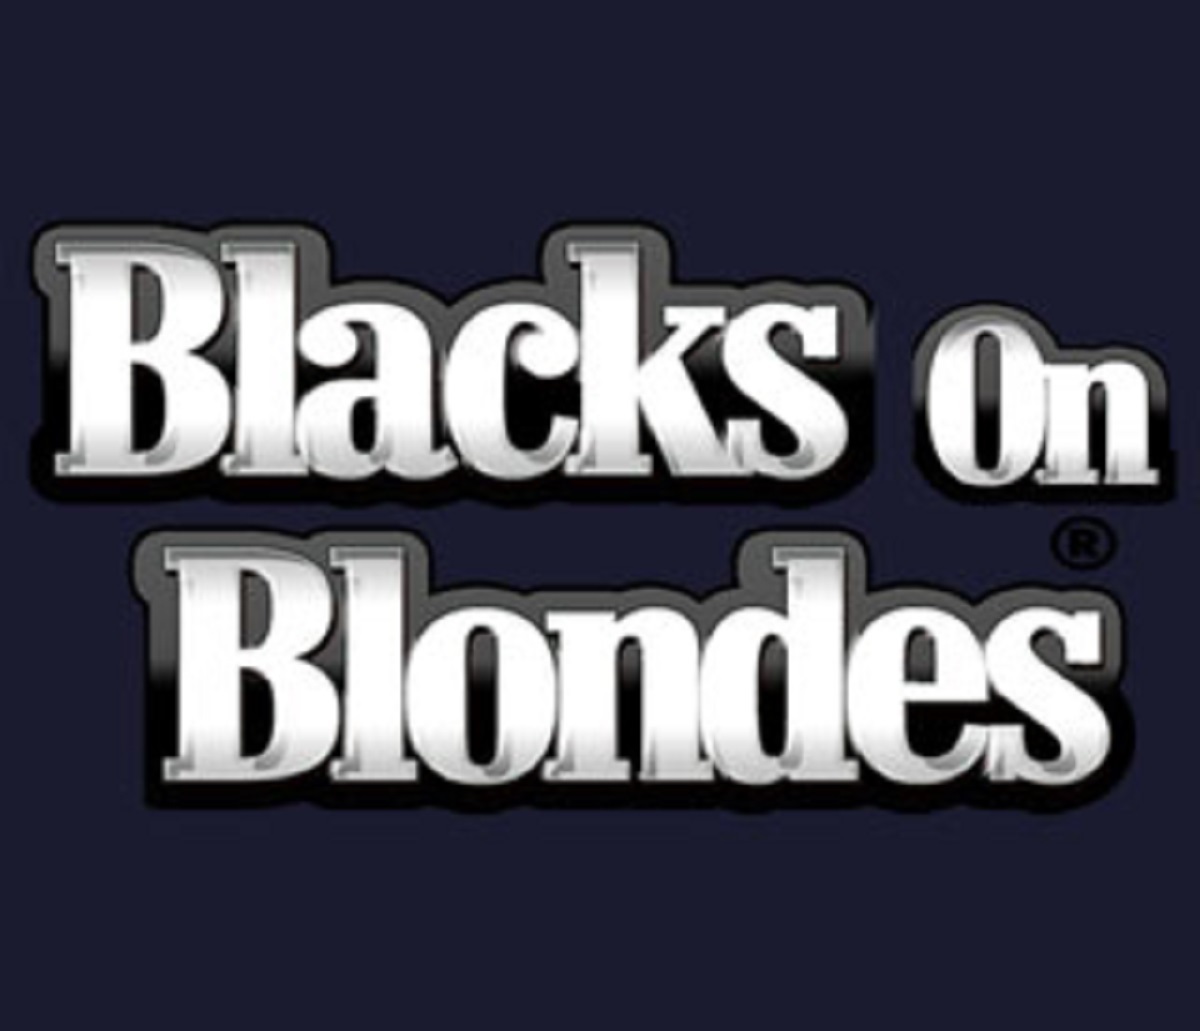 BlacksOnBlondes.com